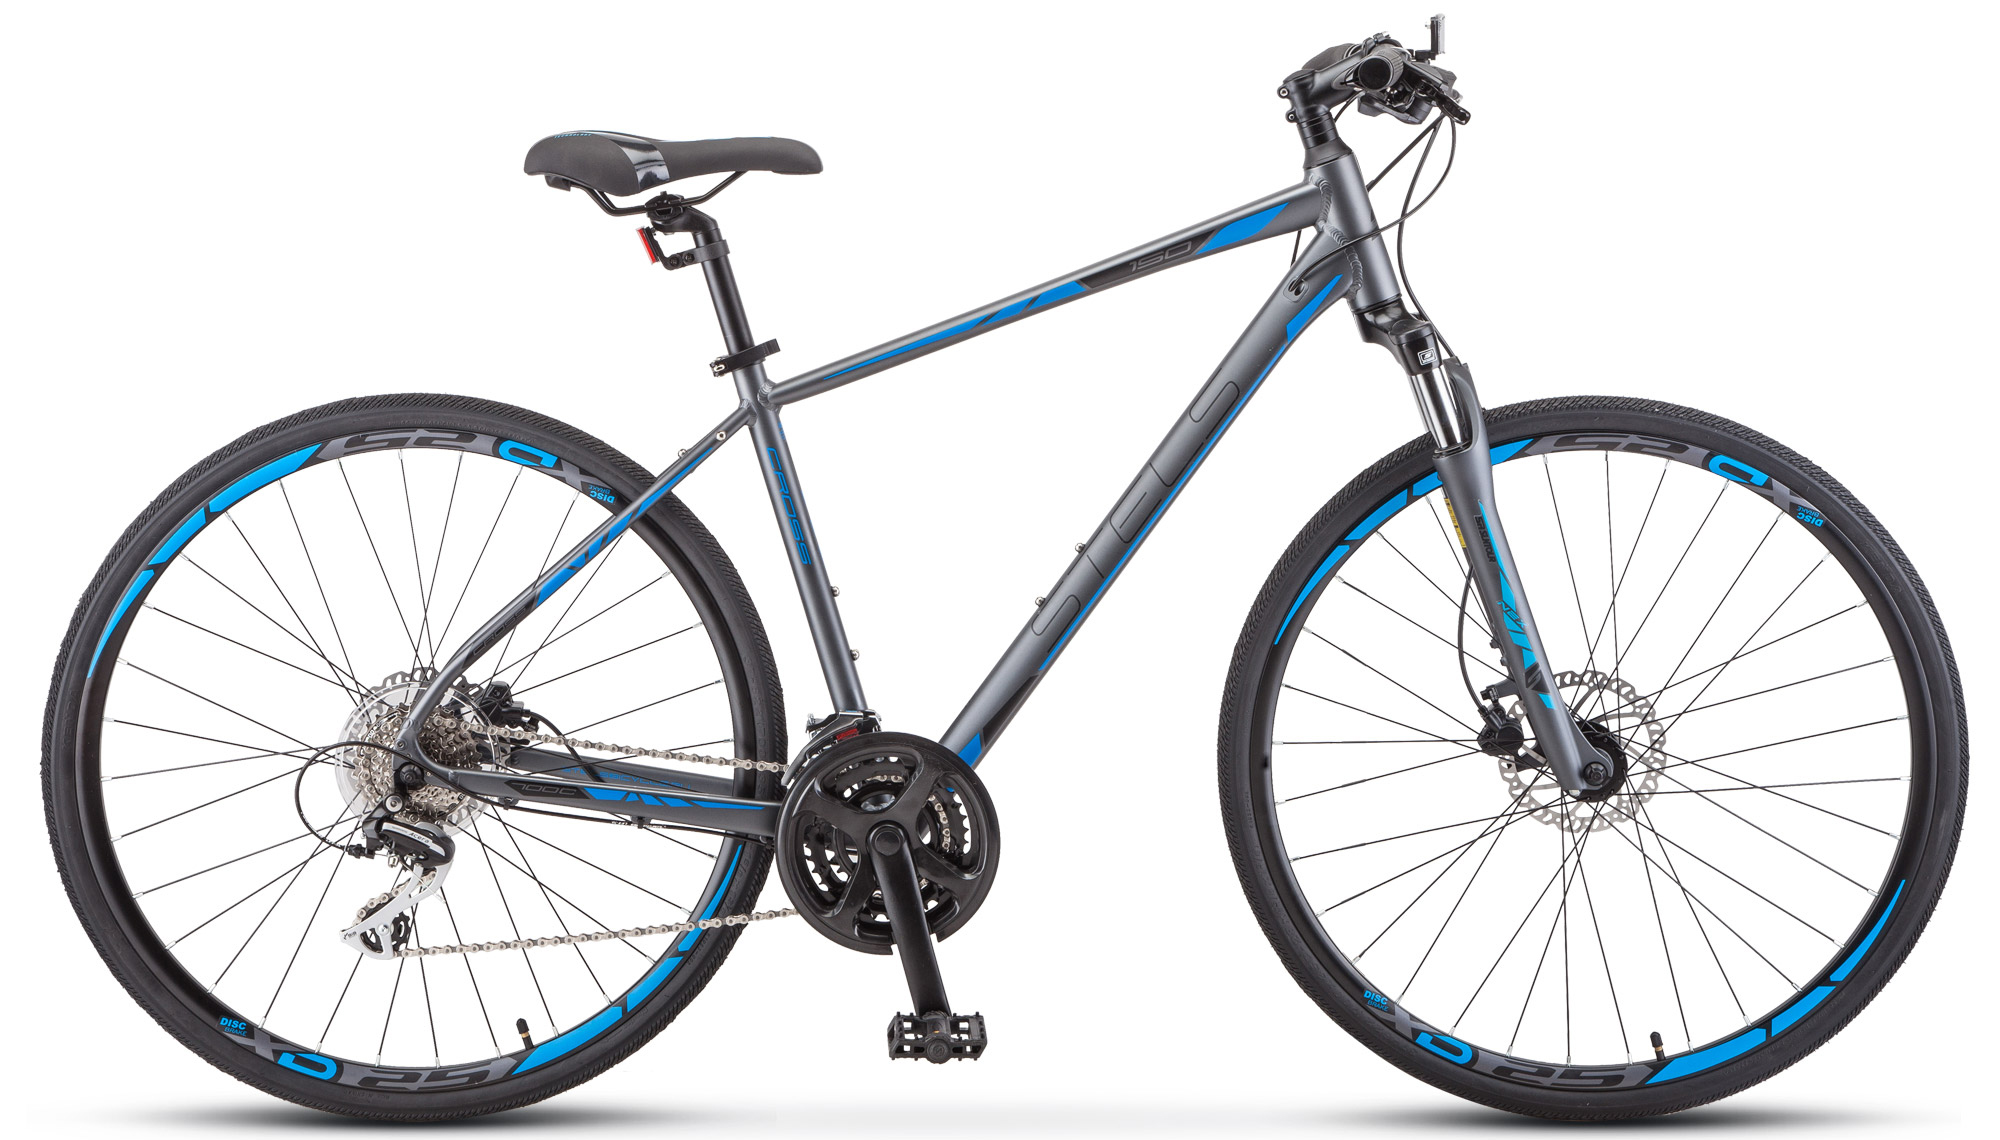  Велосипед Stels Cross 150 D Gent V010 2019